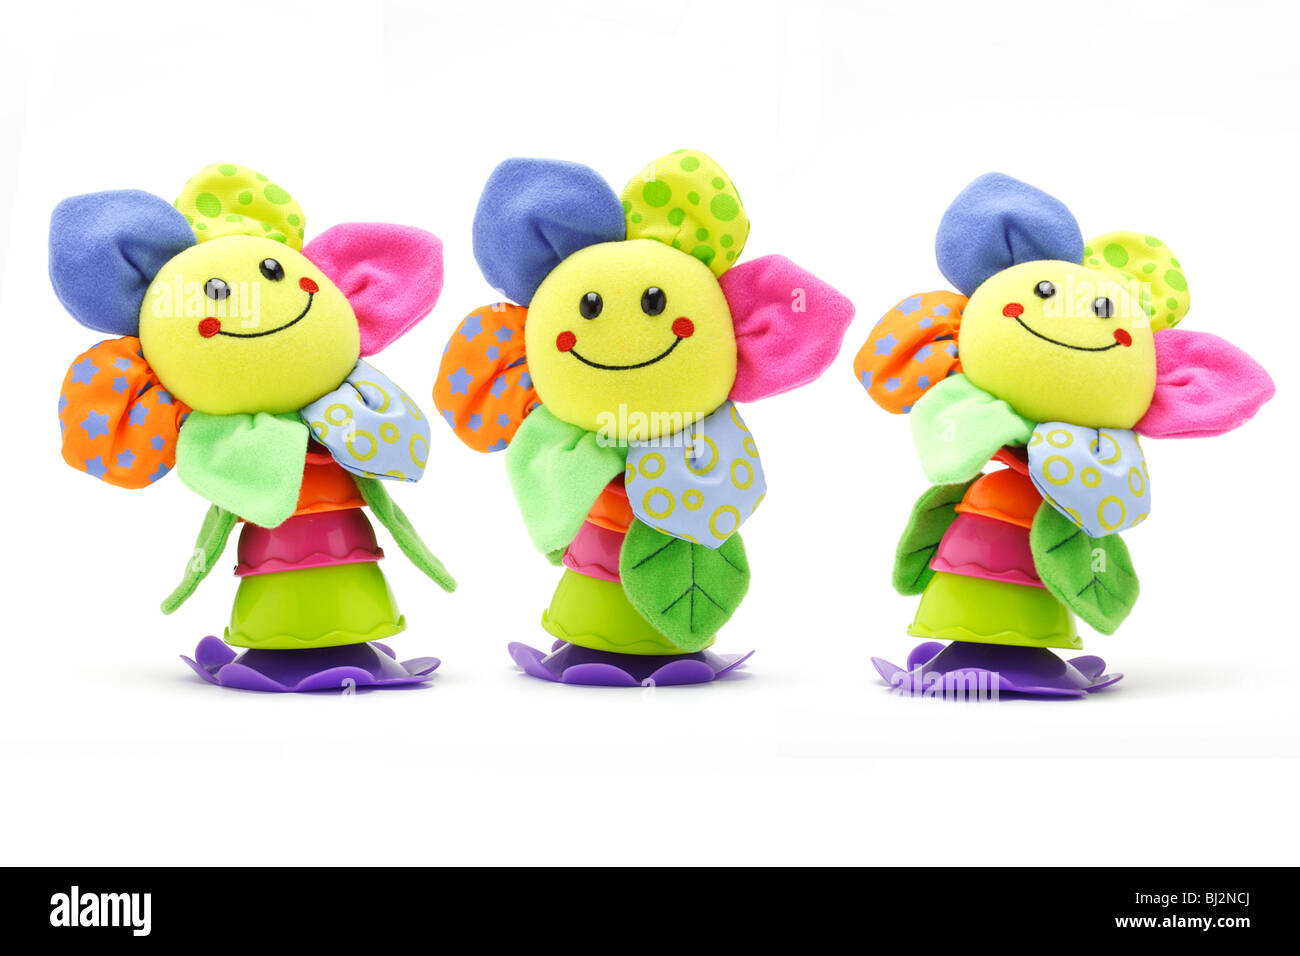 Drei Sonnenblumen Smiley-Gesicht-Puppen auf weißem Hintergrund Stockfoto